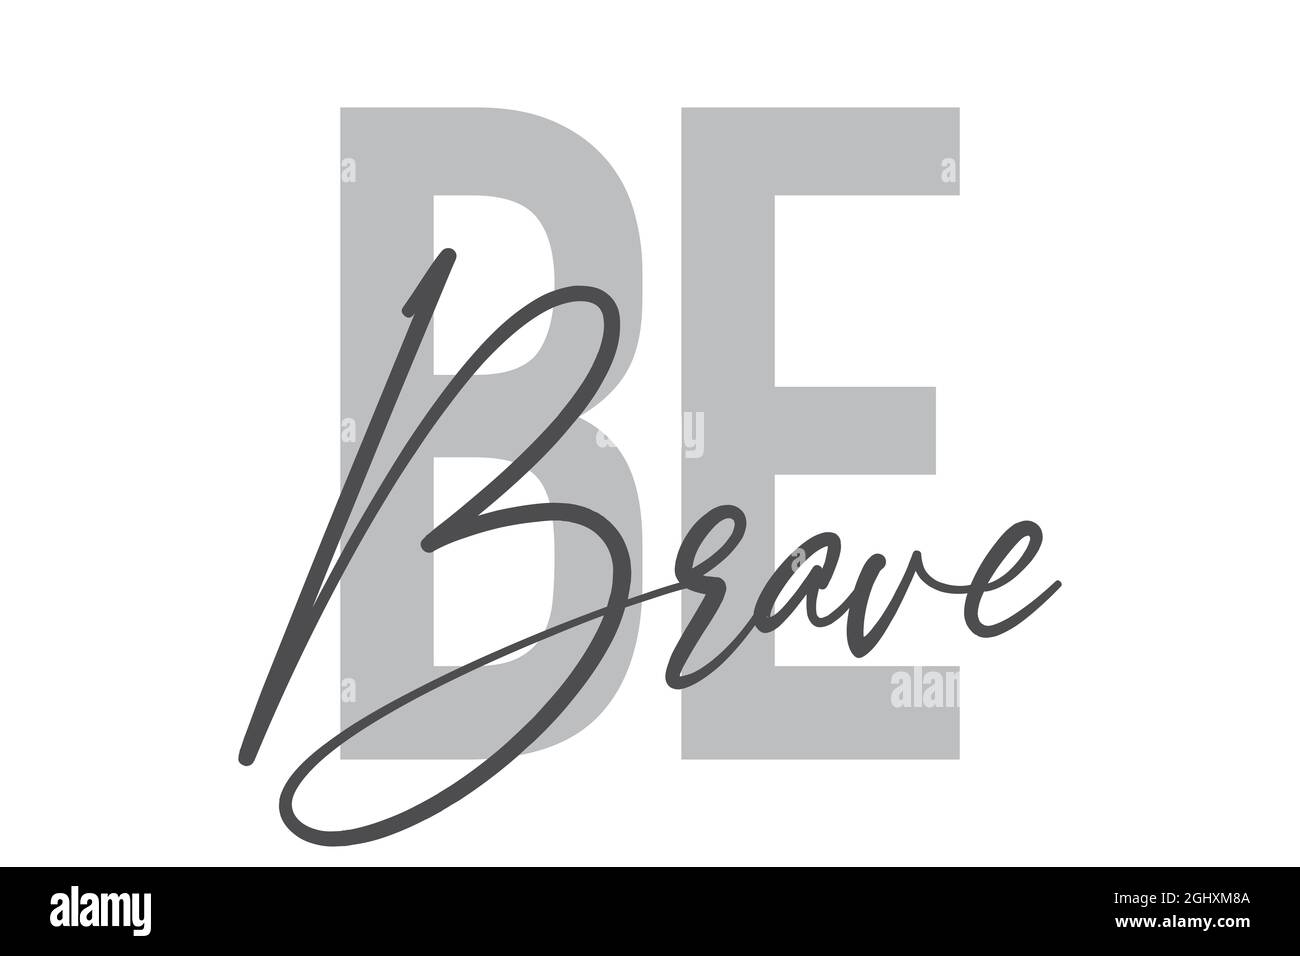 Design tipografico moderno, semplice e minimale di un detto 'Be Brave' in toni di grigio. Grafica vettoriale elegante, urbana, alla moda e giocosa a mano Foto Stock